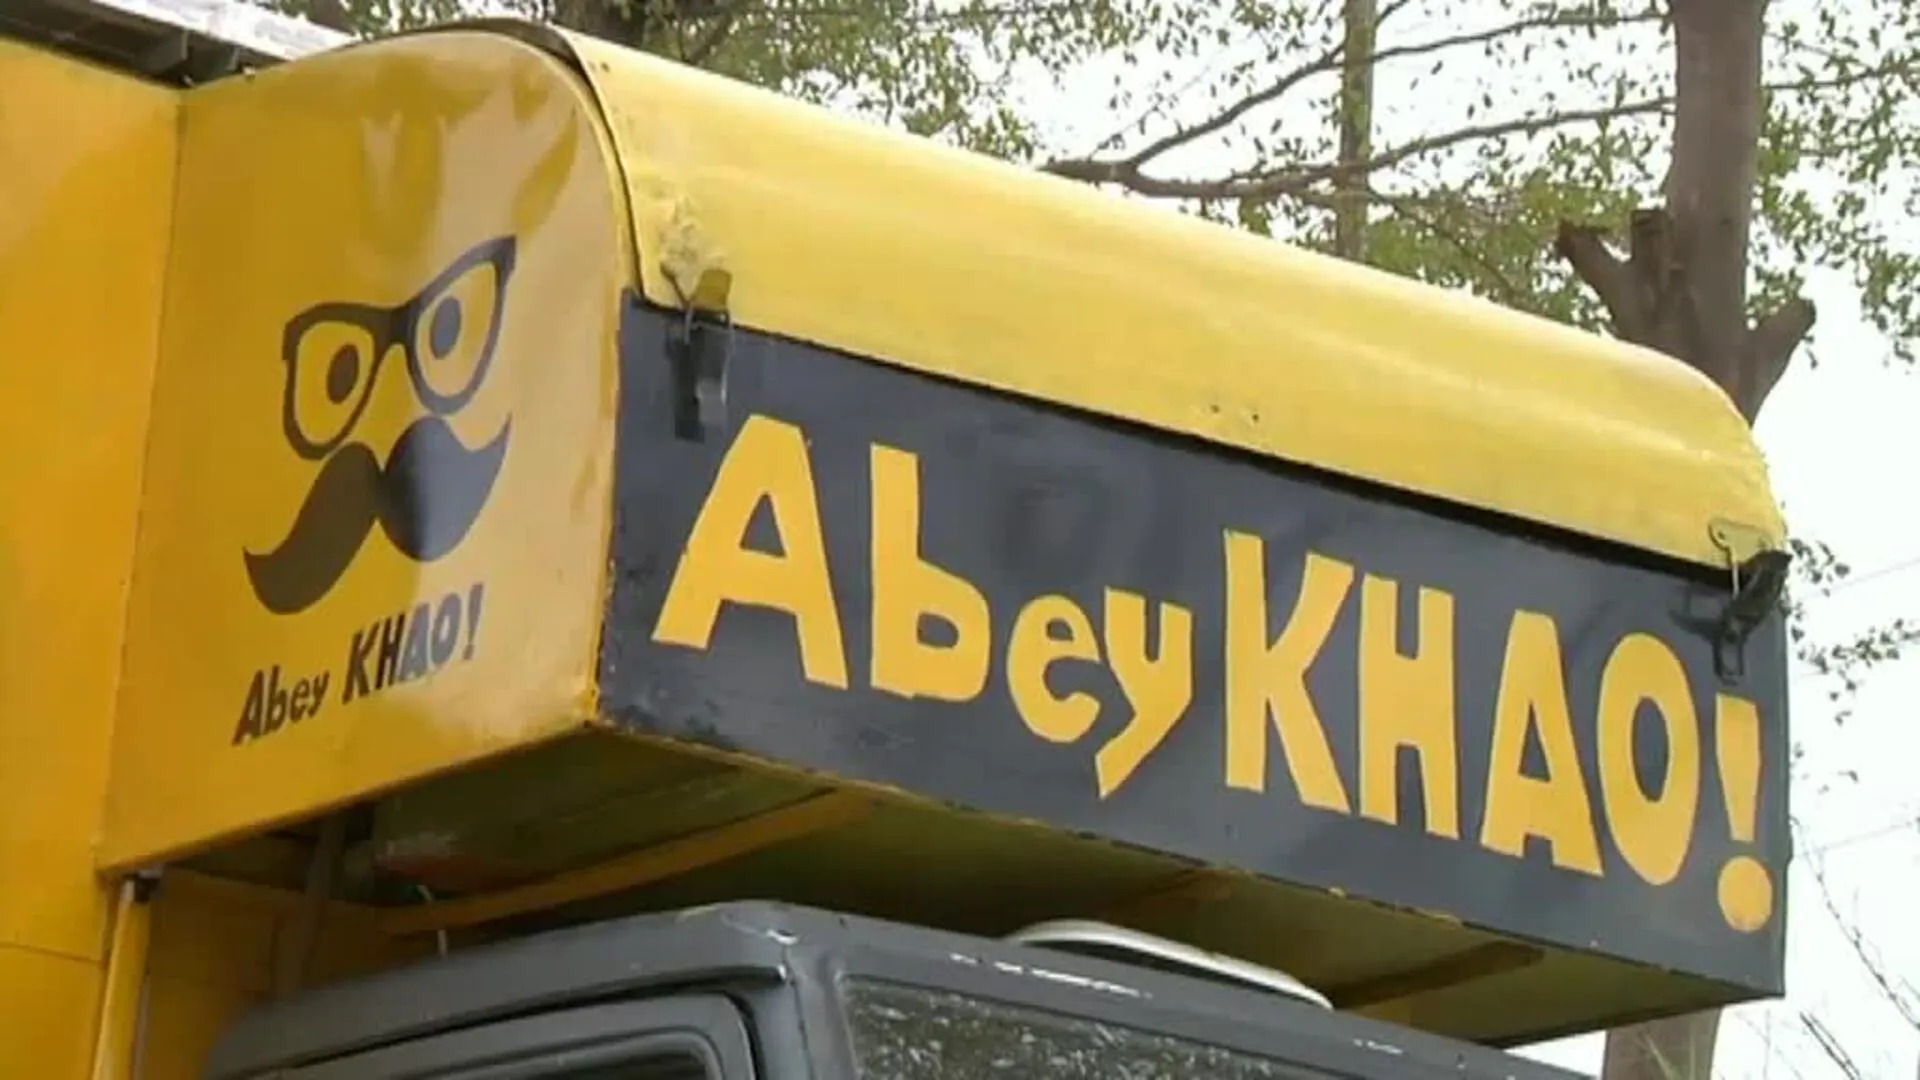 Un camión de comida atendido por trabajadores sordos en Pakistán atiende en el lenguaje de los signos